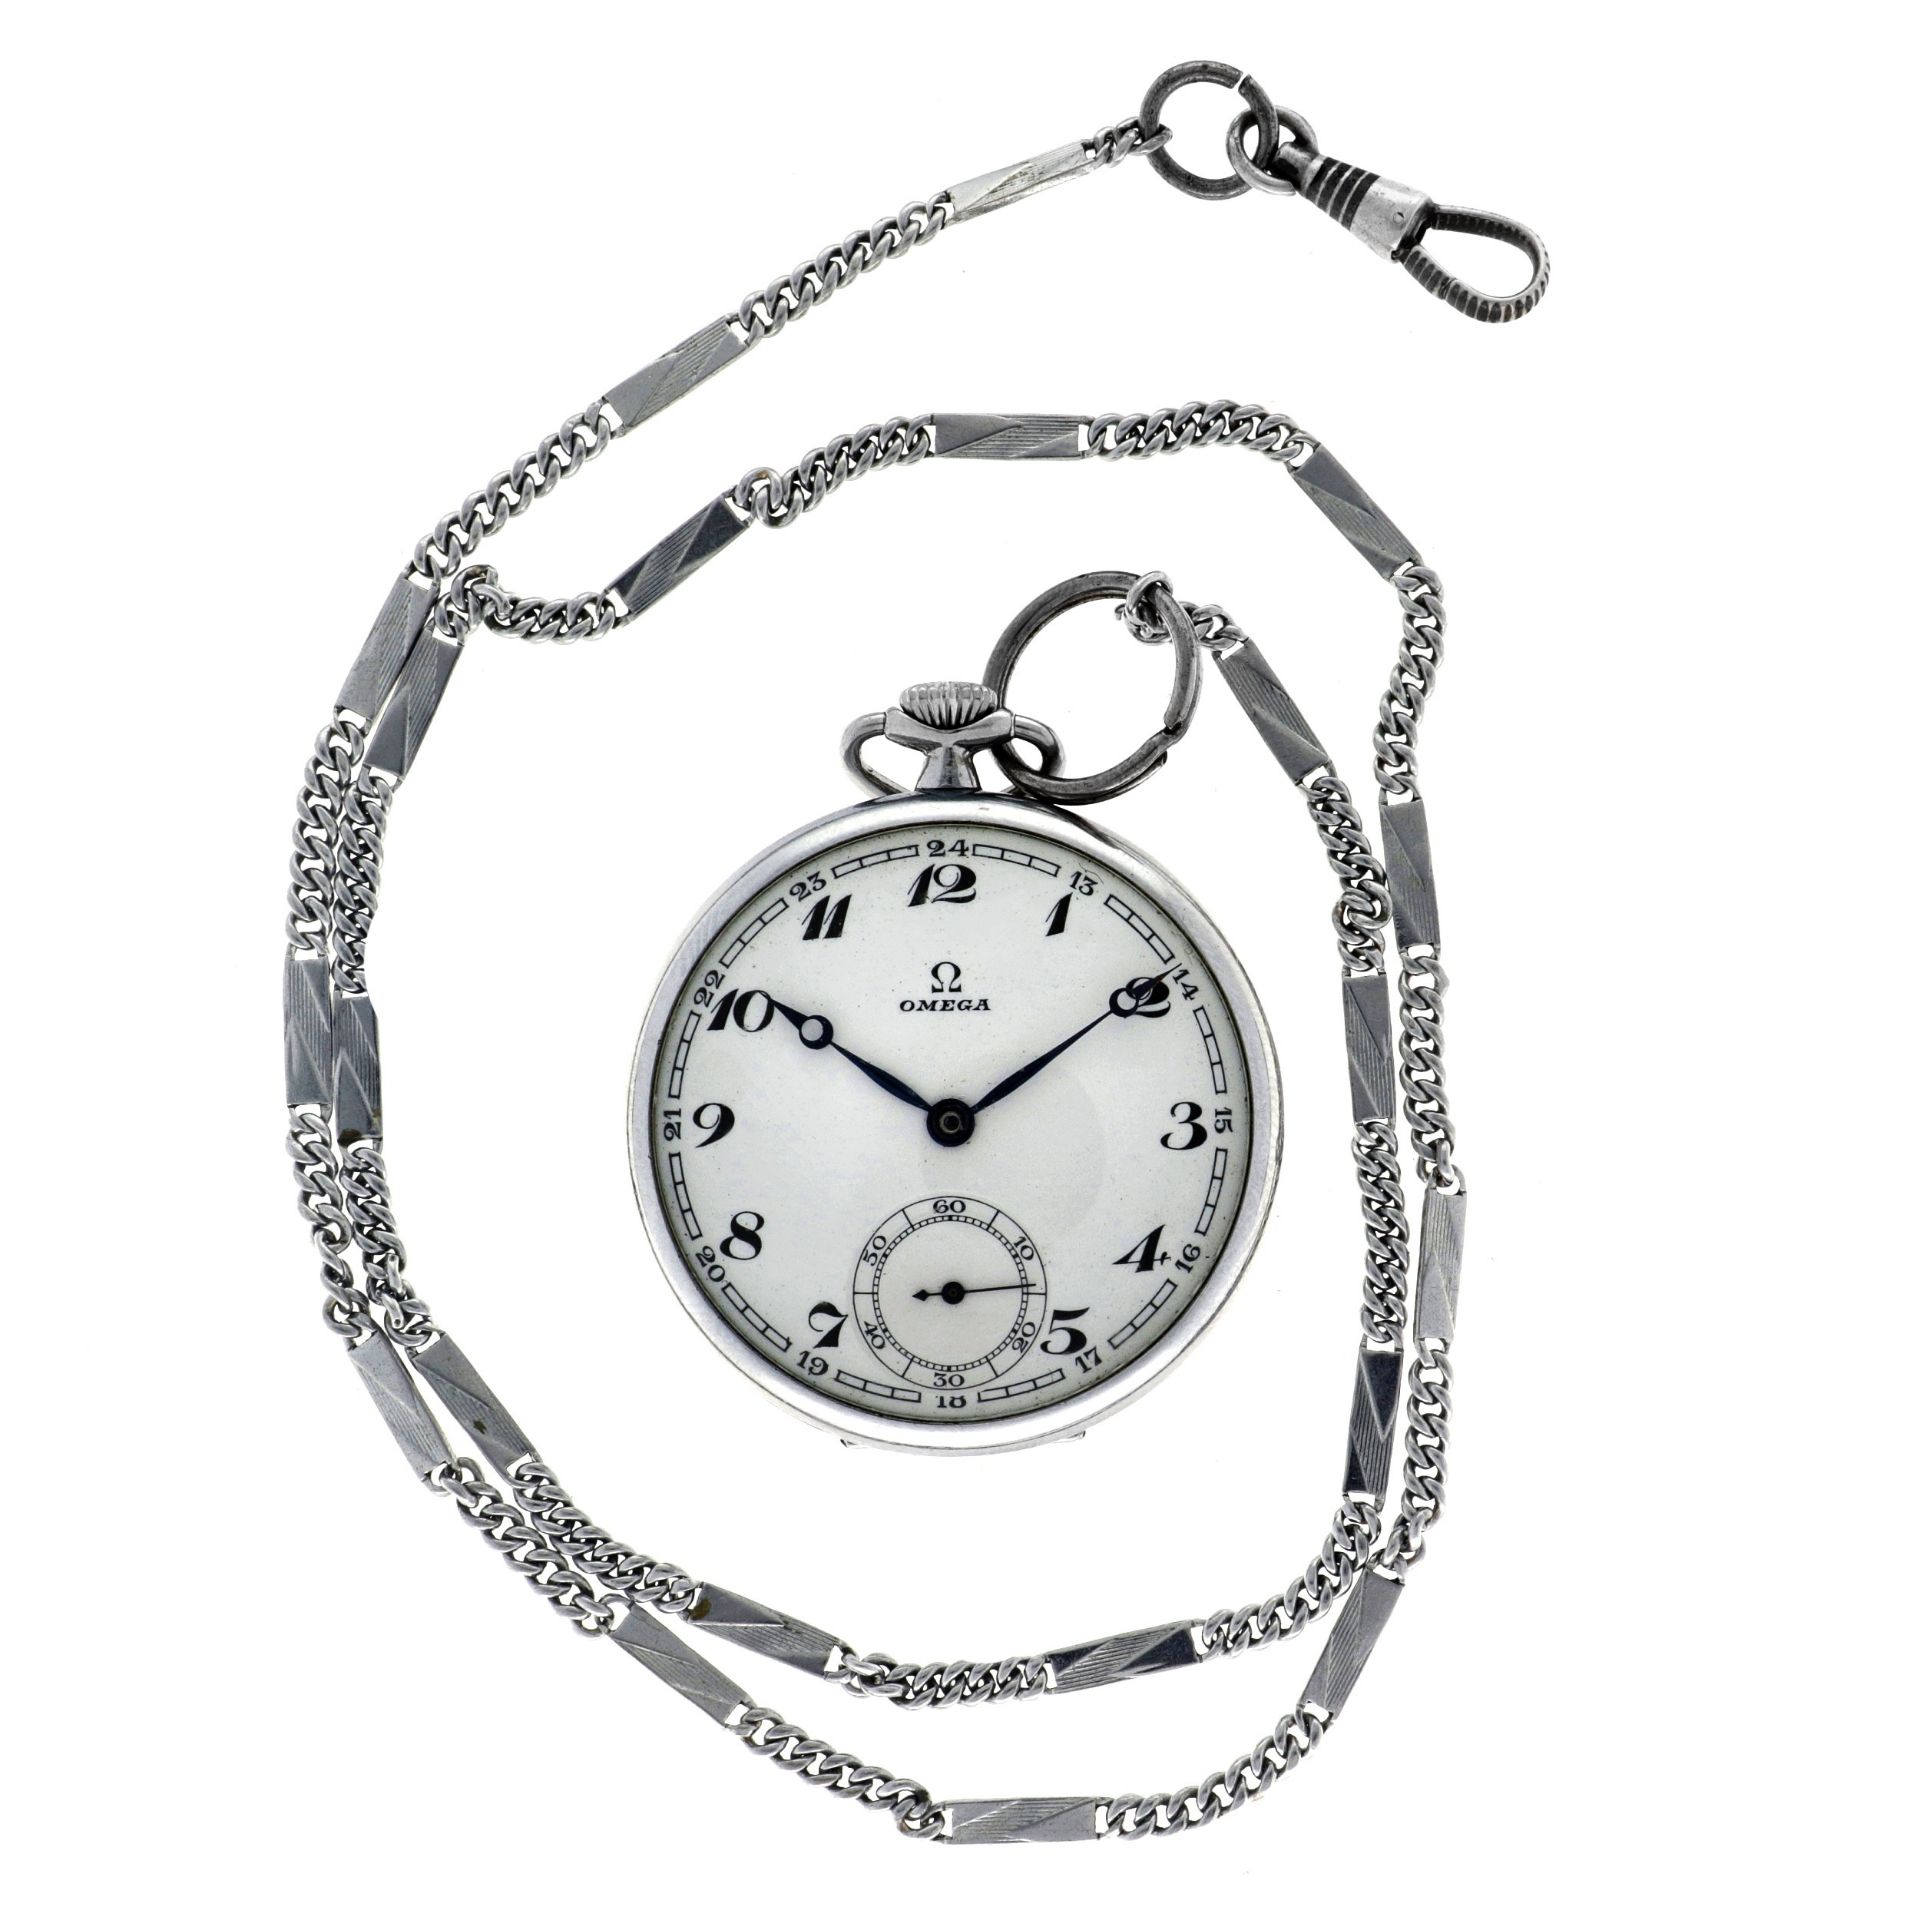 No Reserve - Omega Lever-Escapement - Men's pocket watch - approx. 1935.